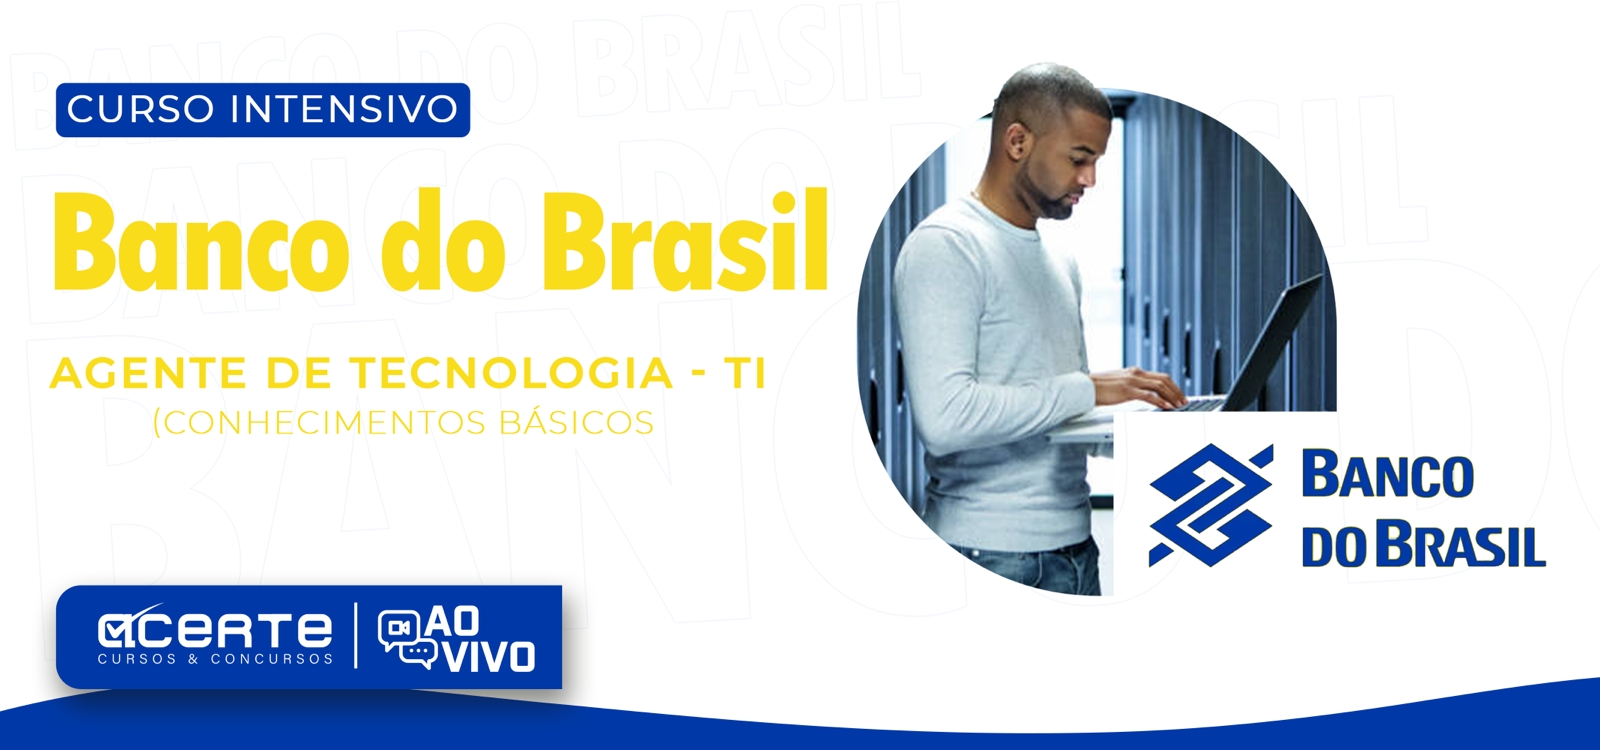 Banco do Brasil - Escriturário - Agente de Tecnologia - Conhecimentos Gerais - AO VIVO - Edital Publicado